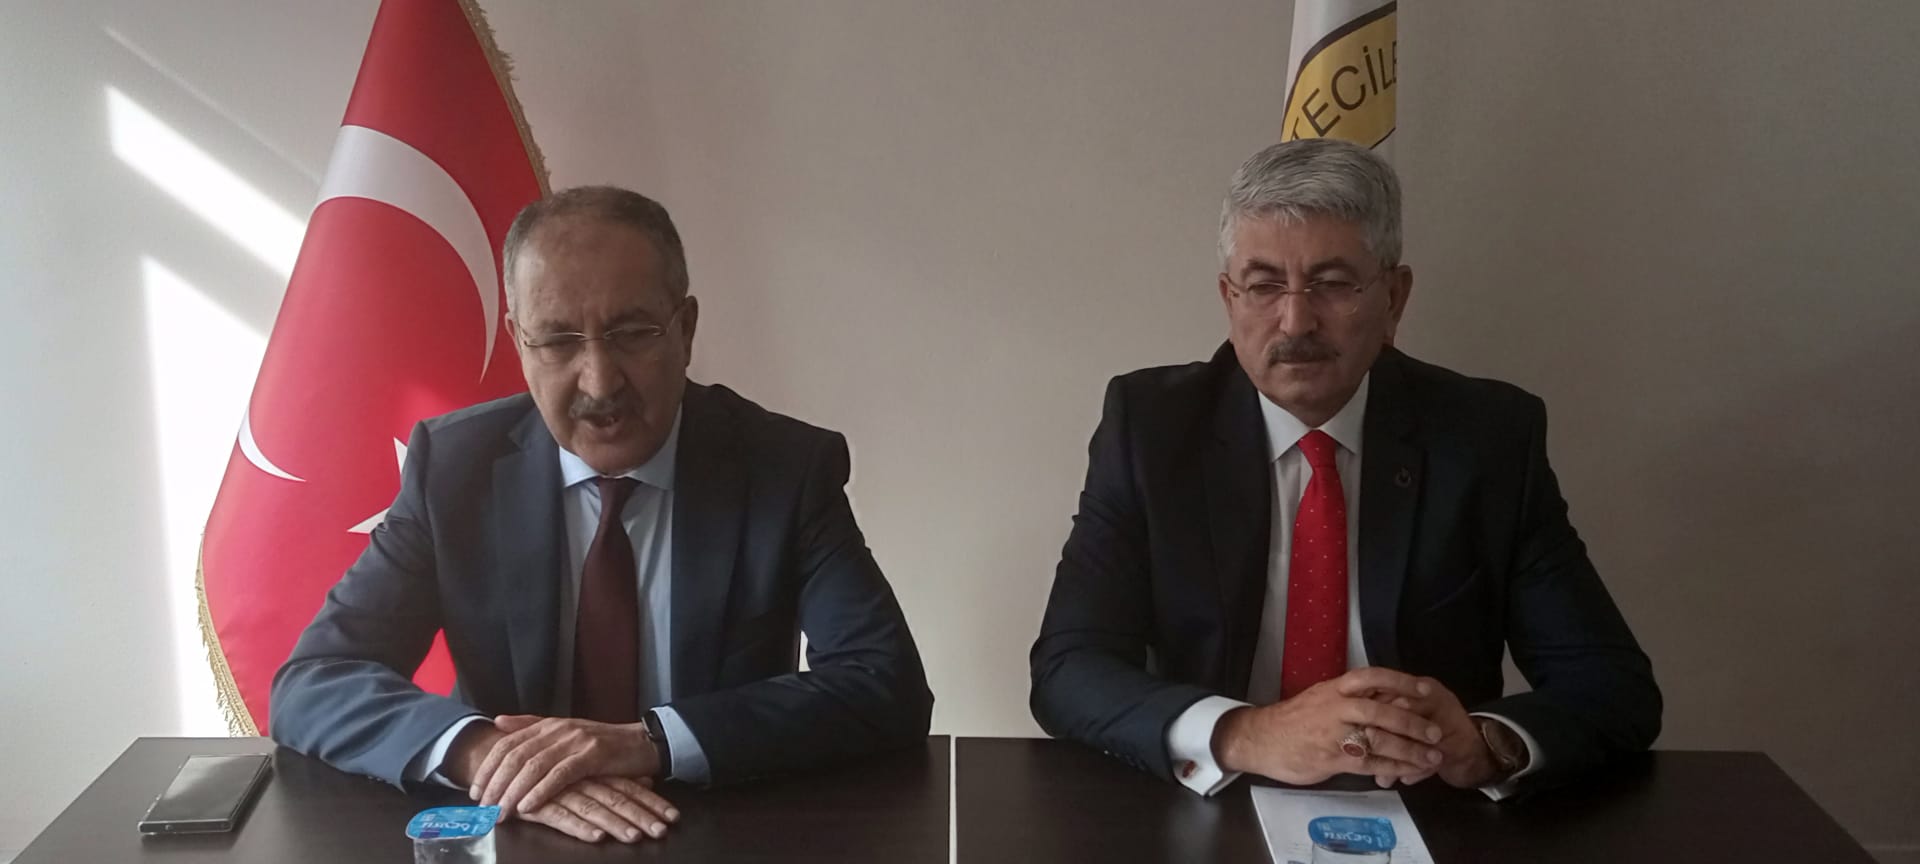 BİK Genel Müdürü Erkılınç Konya'da konuştu: İnternet çöplüğü oluşmasına müsaade etmeyeceğiz